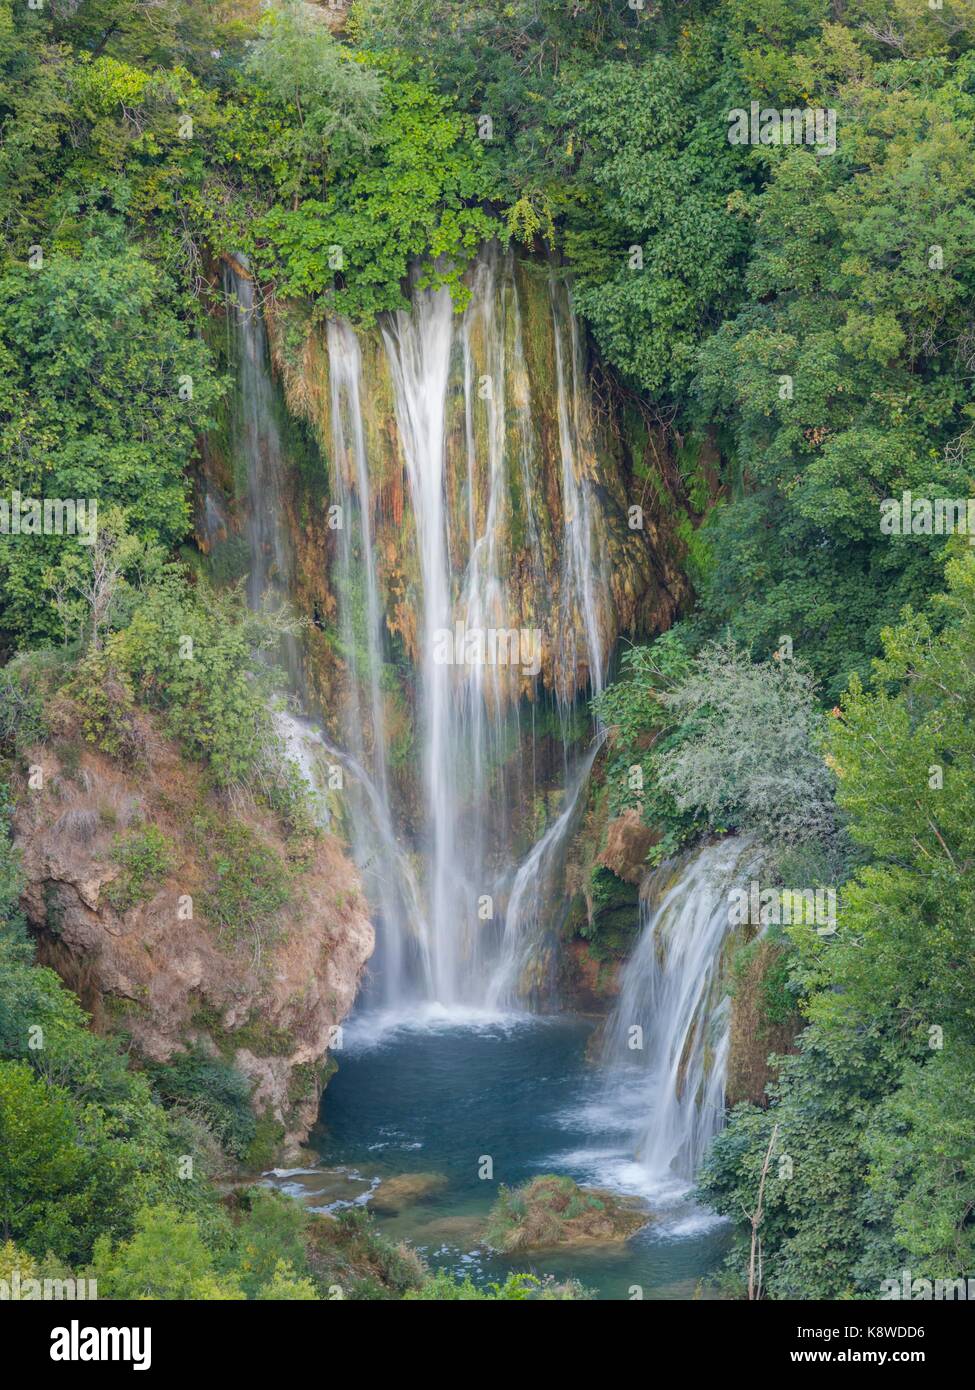 Manojlovac waterfall area in Croatia Stock Photo